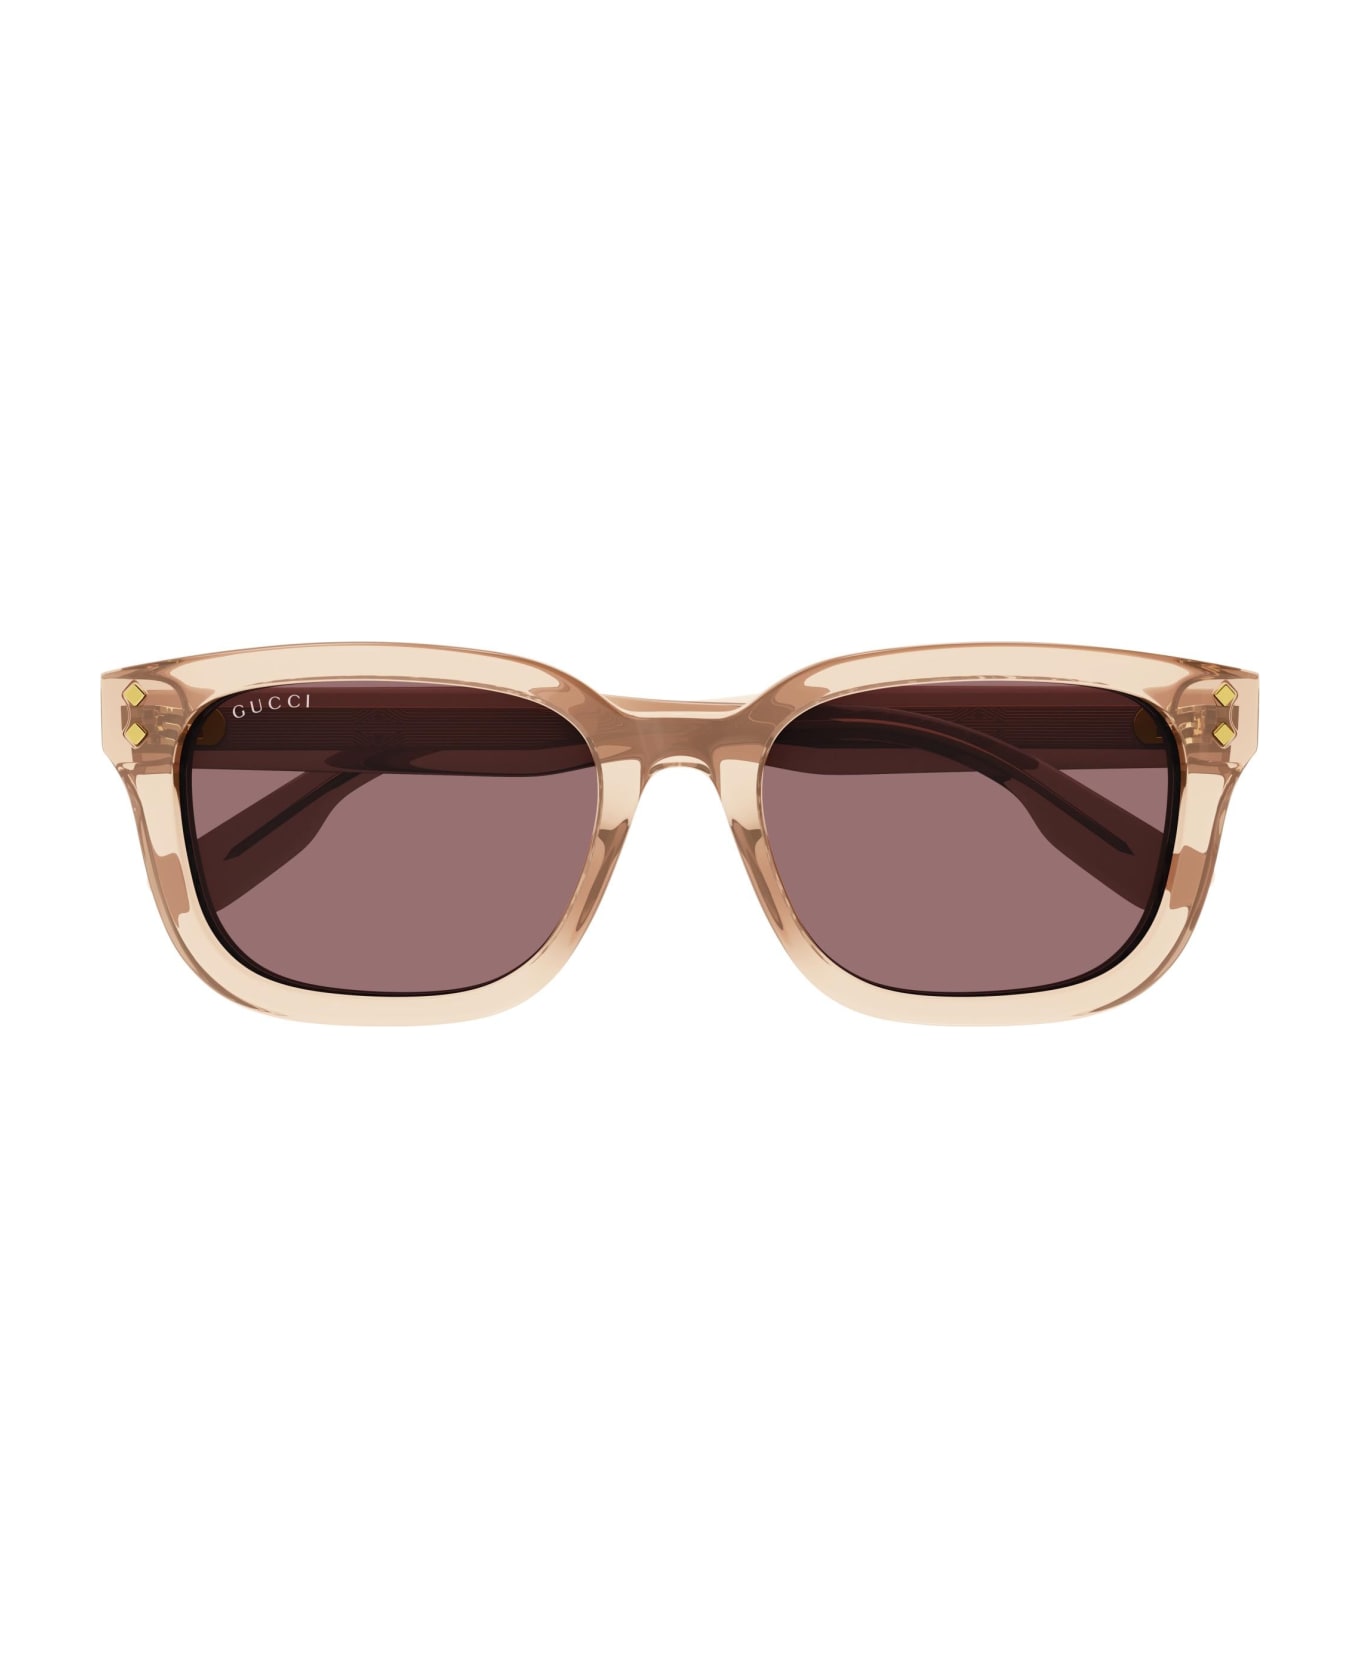 Gucci Eyewear Sunglasses - Arancione/Rosso